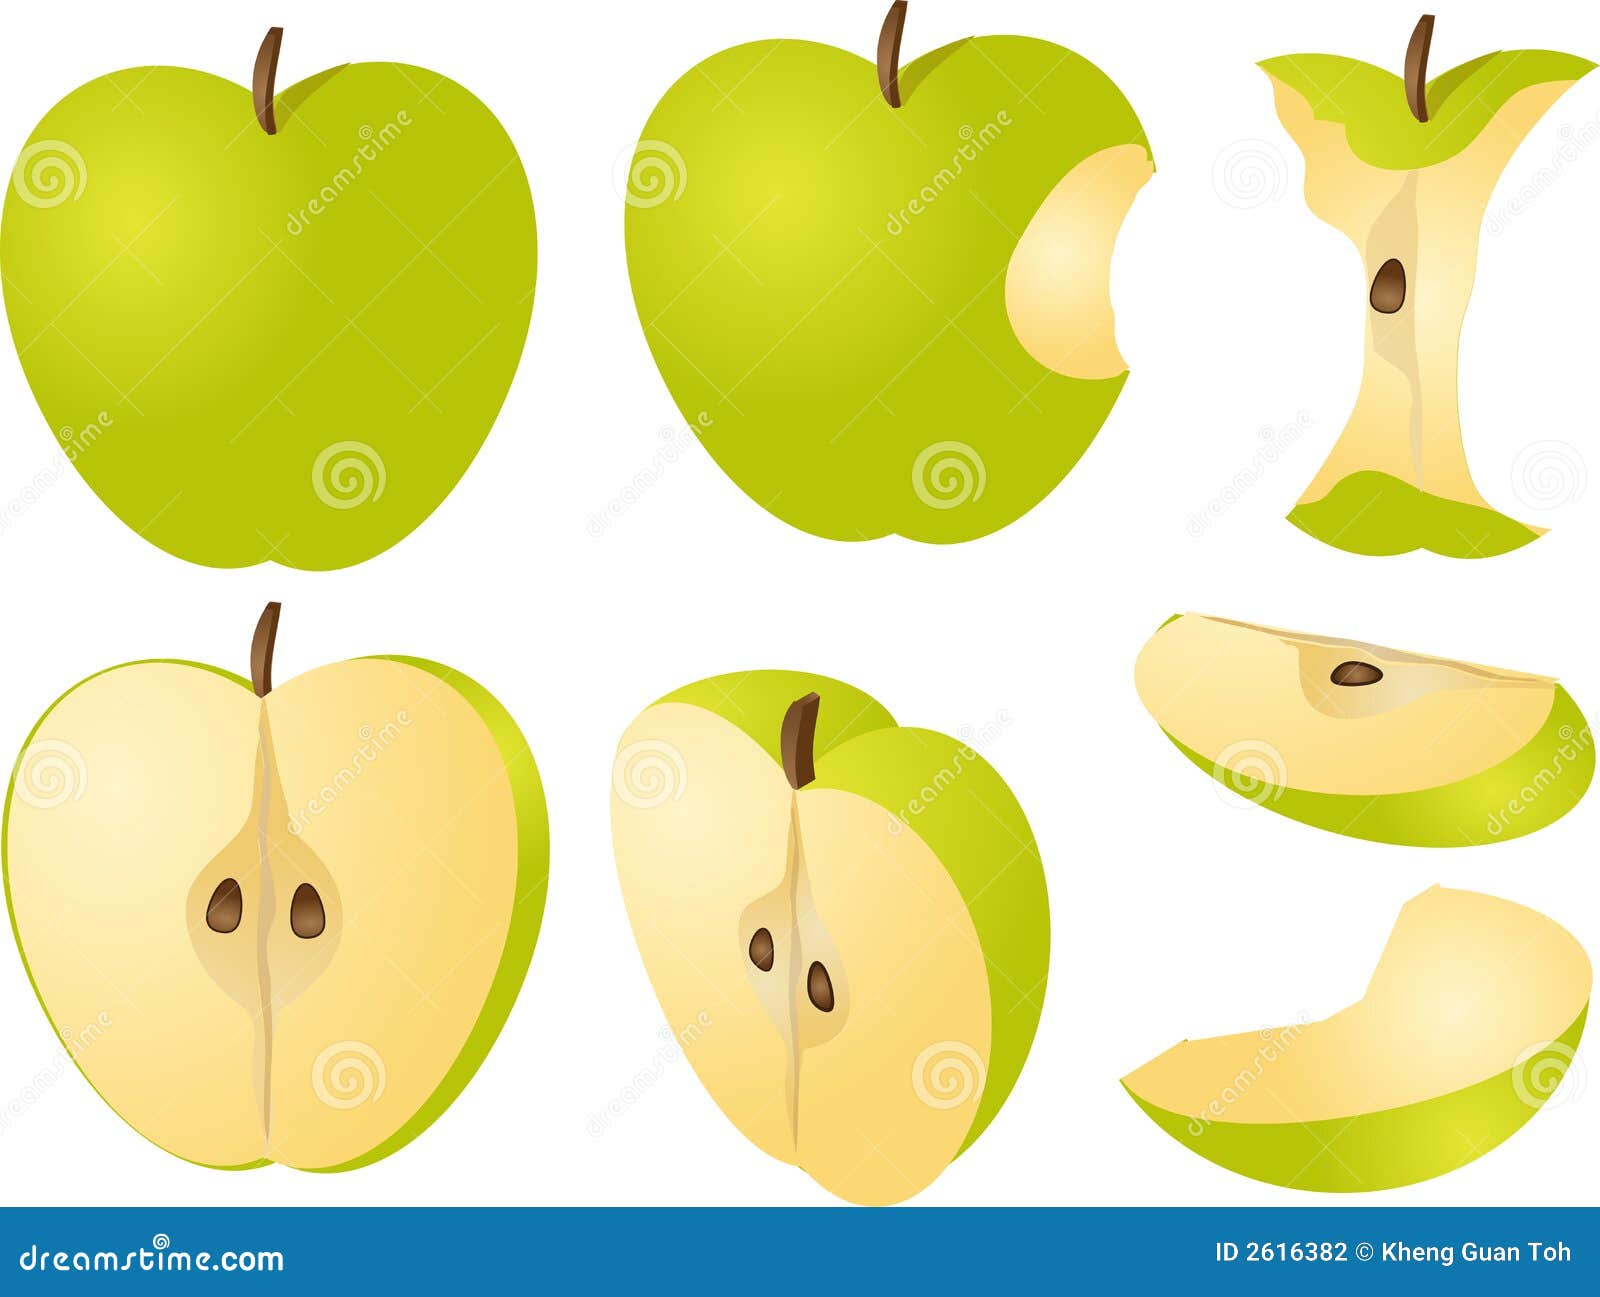 Две трети яблока. Яблоко в разрезе. Целое яблоко. Яблоко и его половинки. Долька яблока.